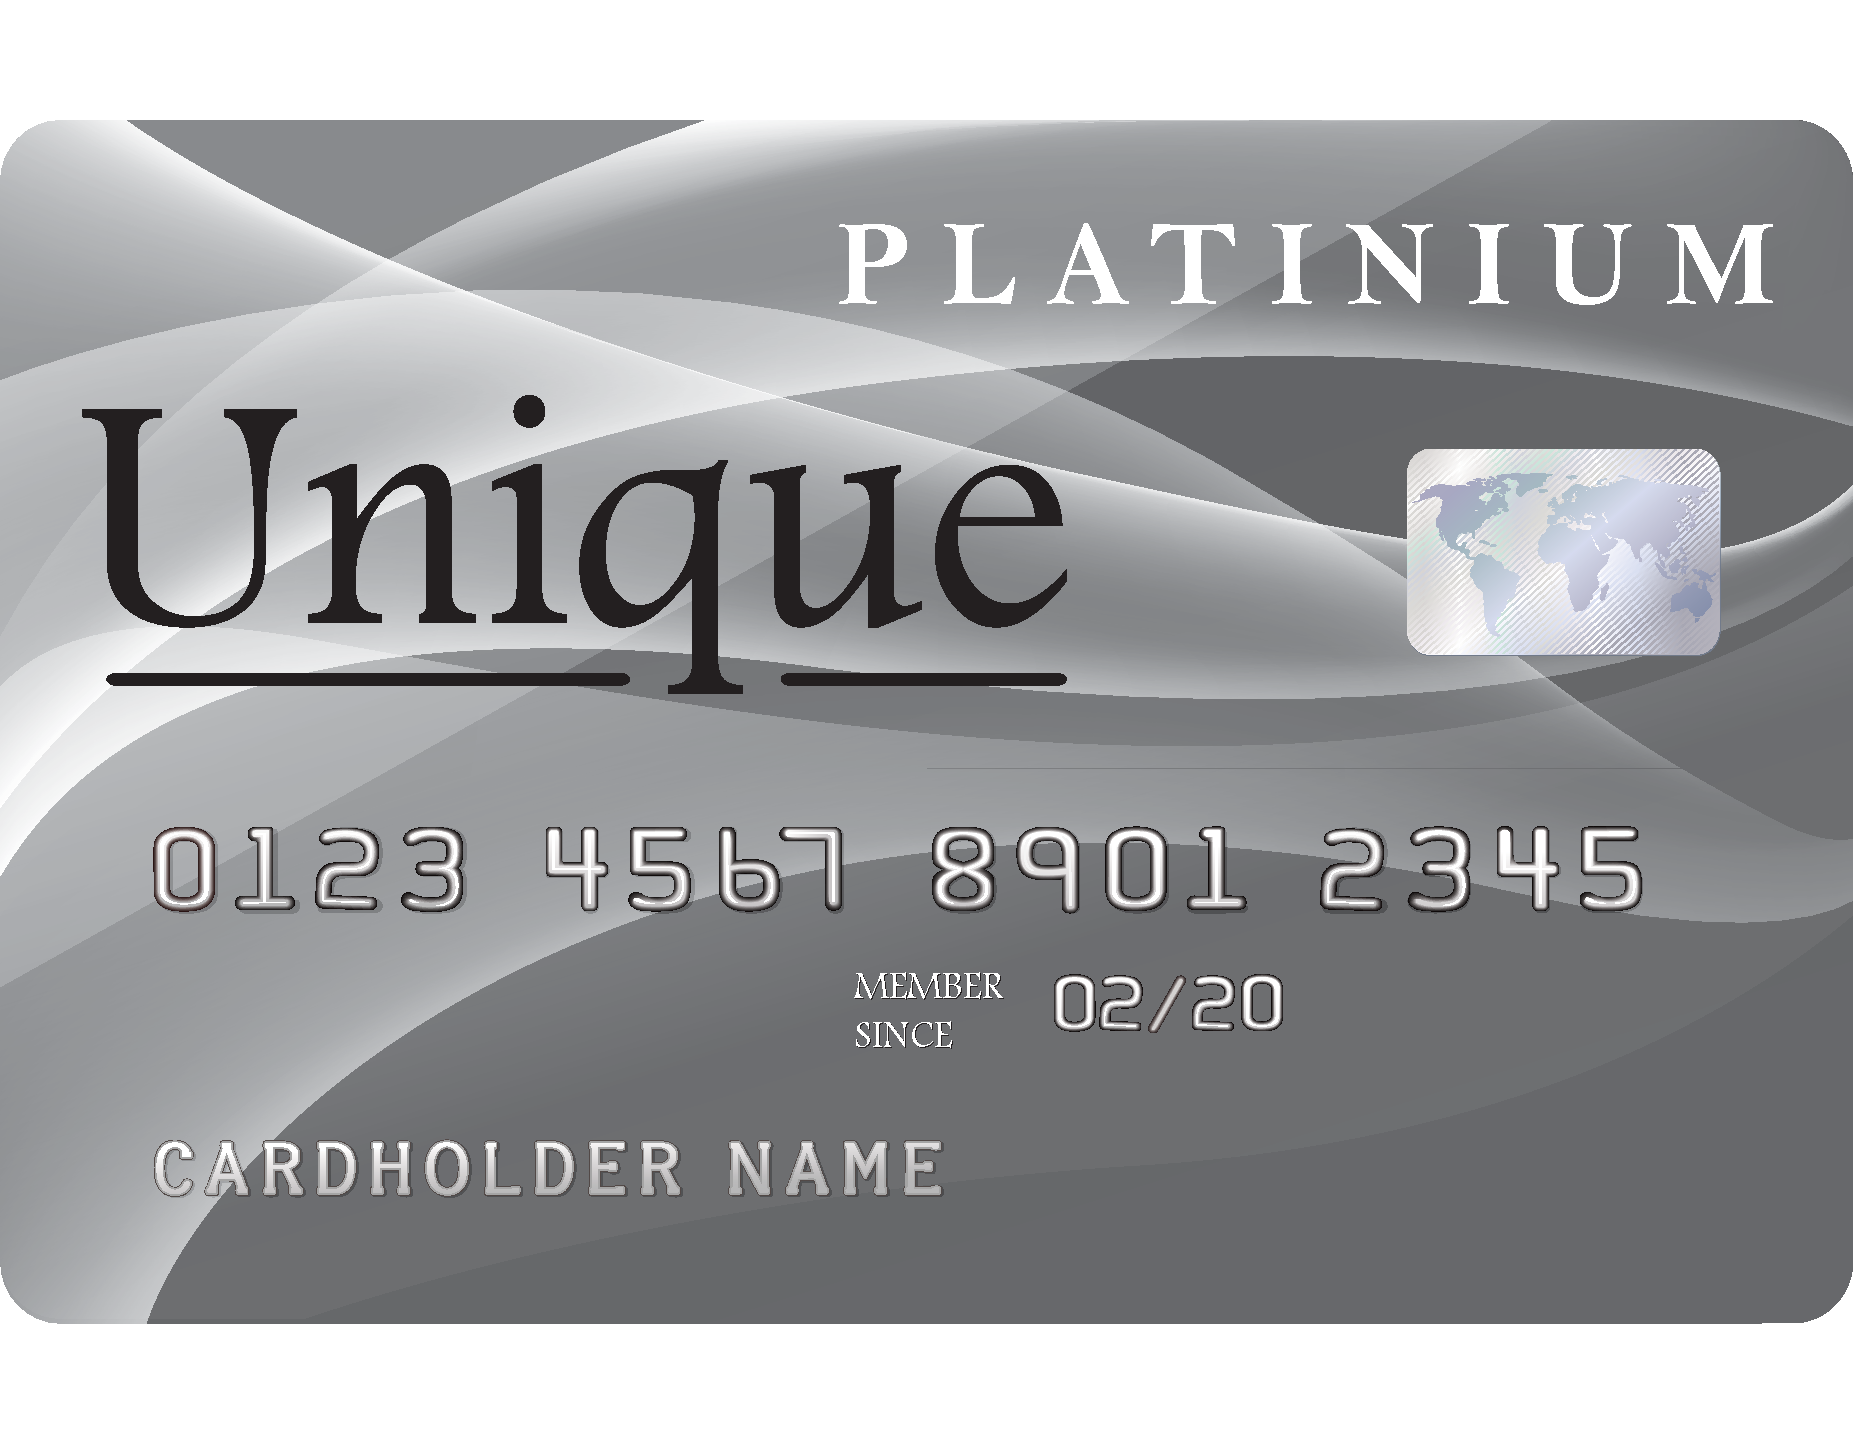 Unique Platinum - ApplyNowCredit.com